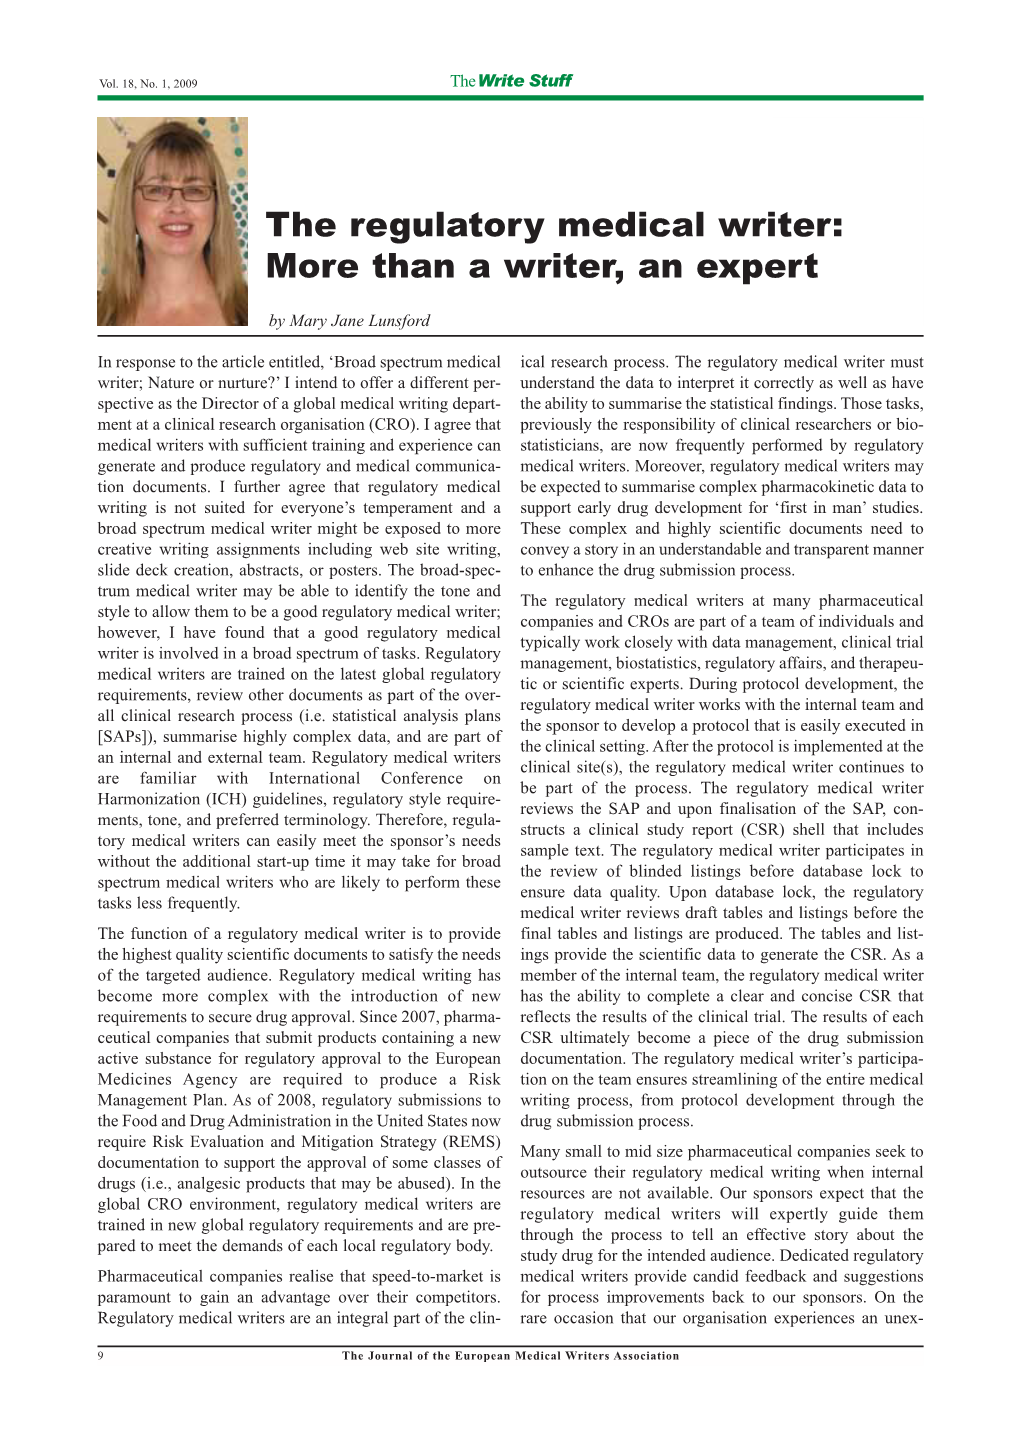 The Regulatory Medical Writer: More Than a Writer, an Expert